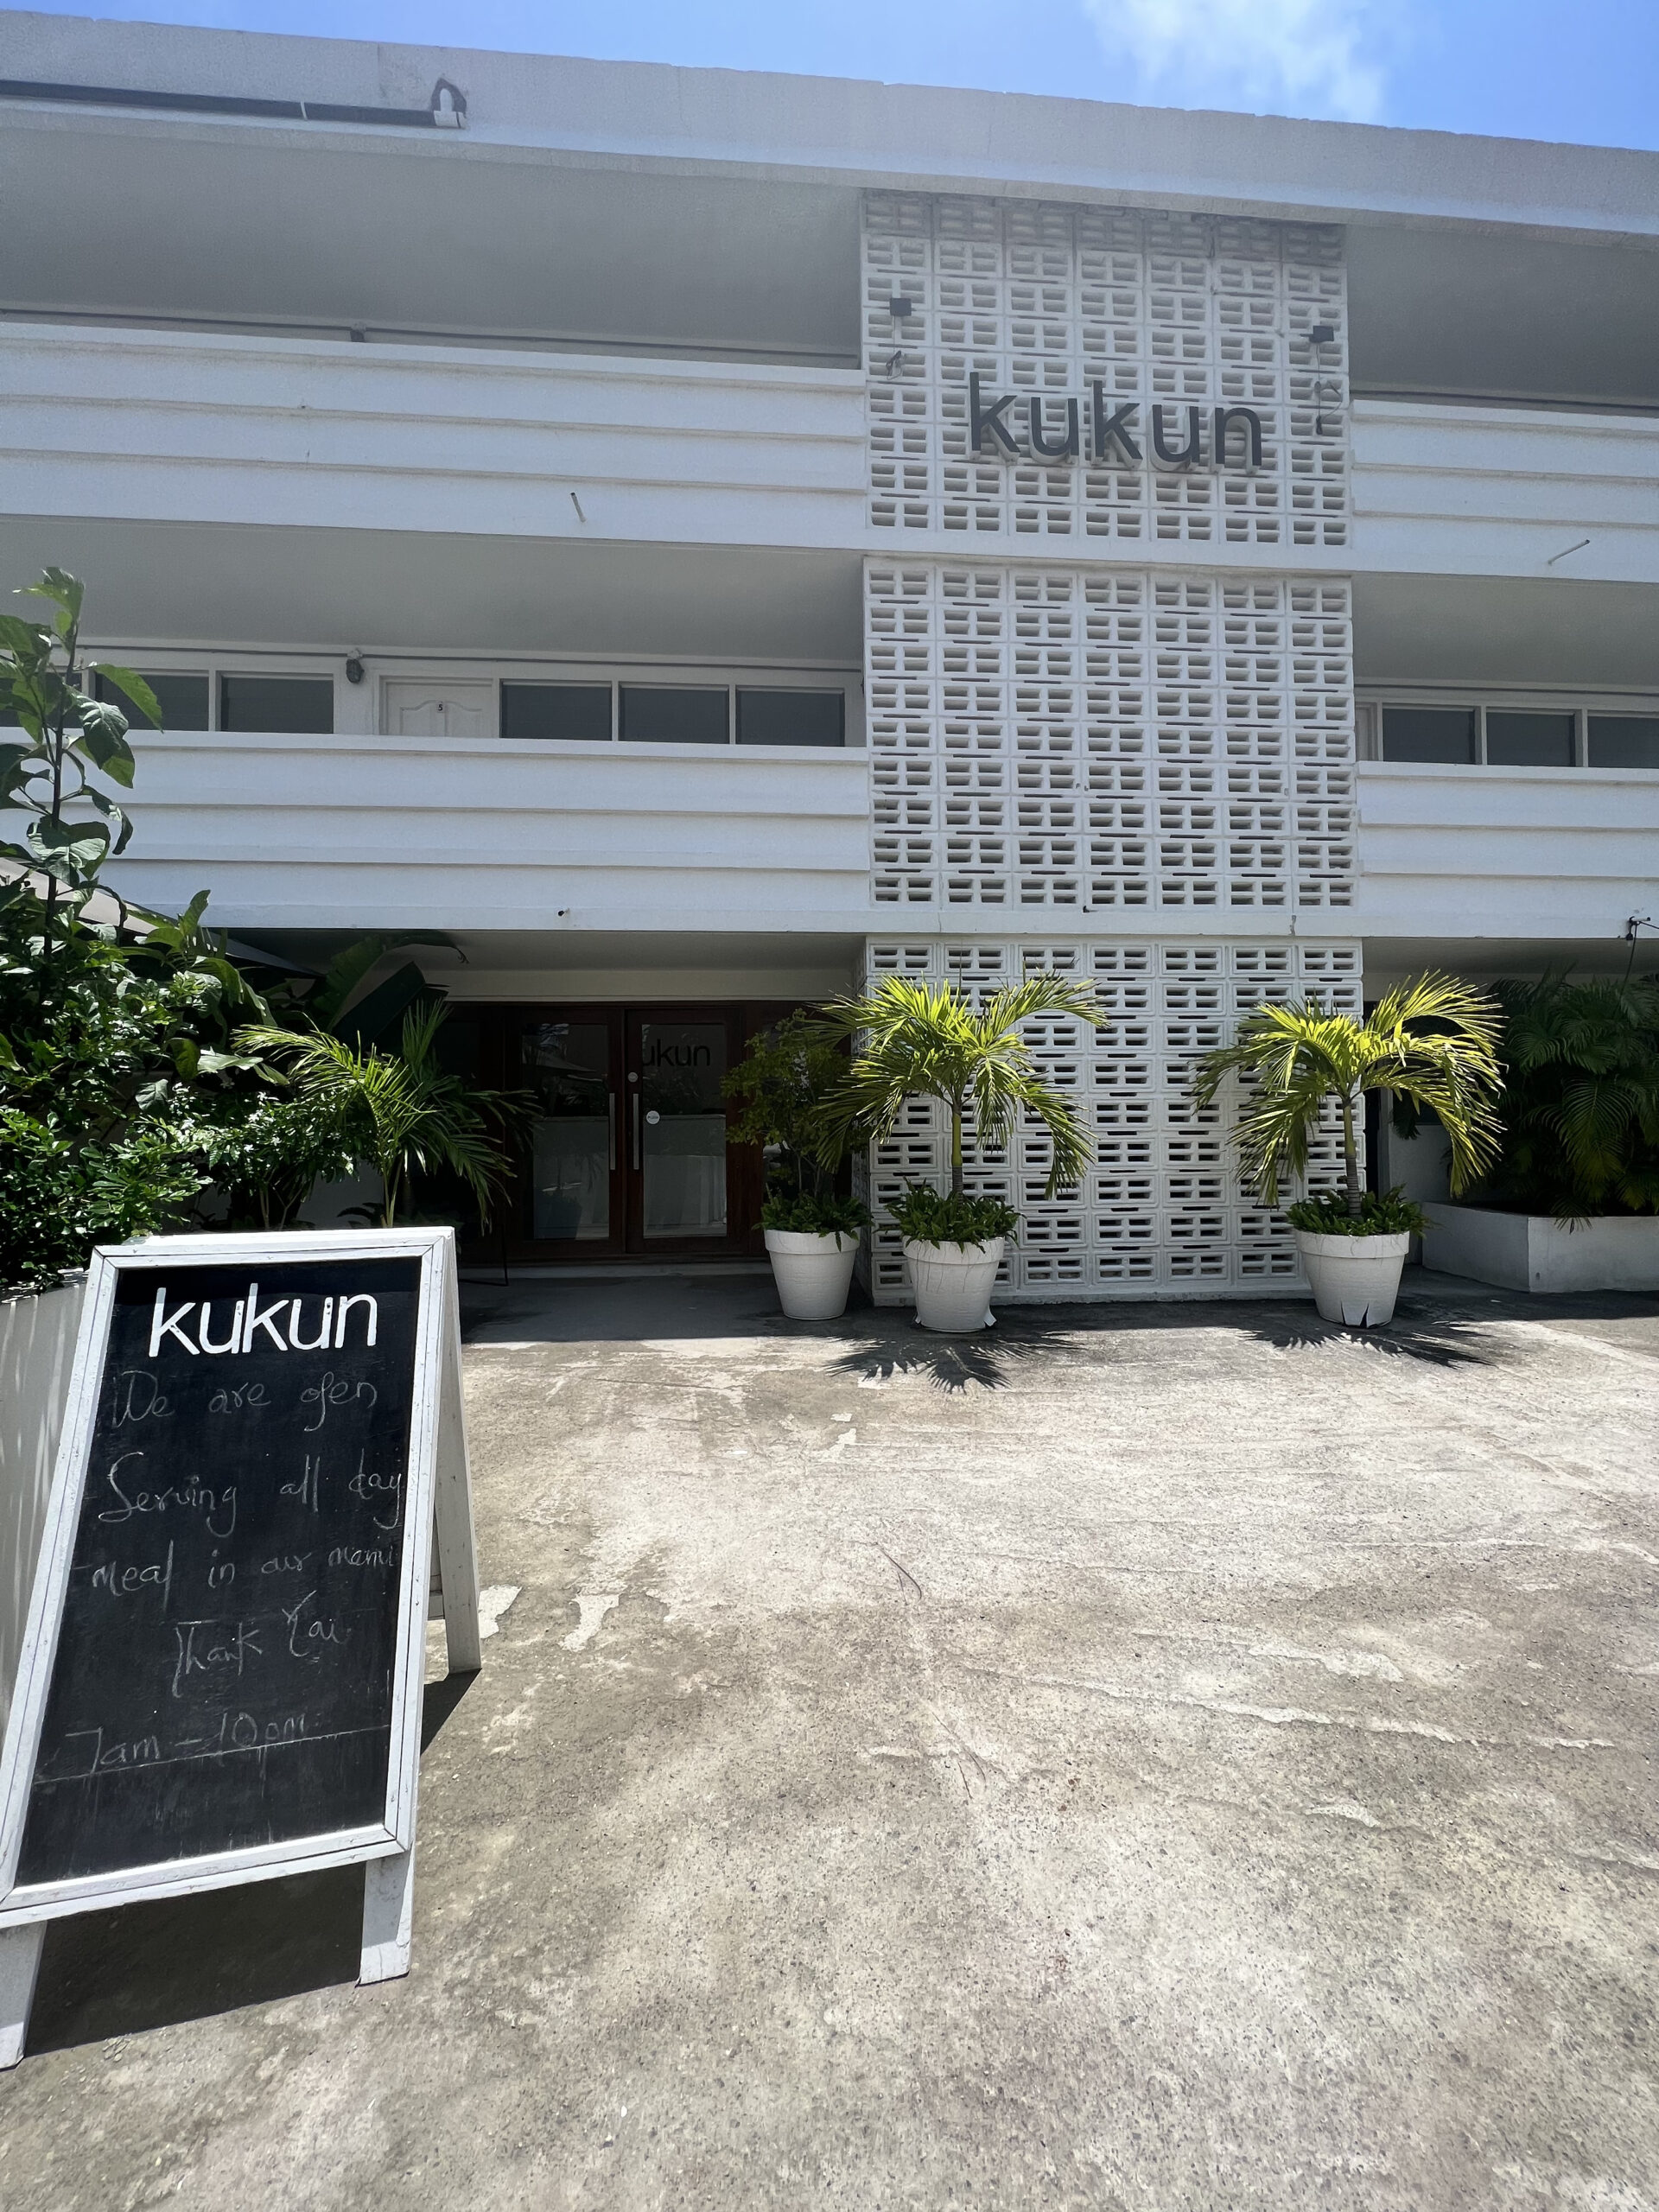 Kukun Coworking Cafe in Osu 